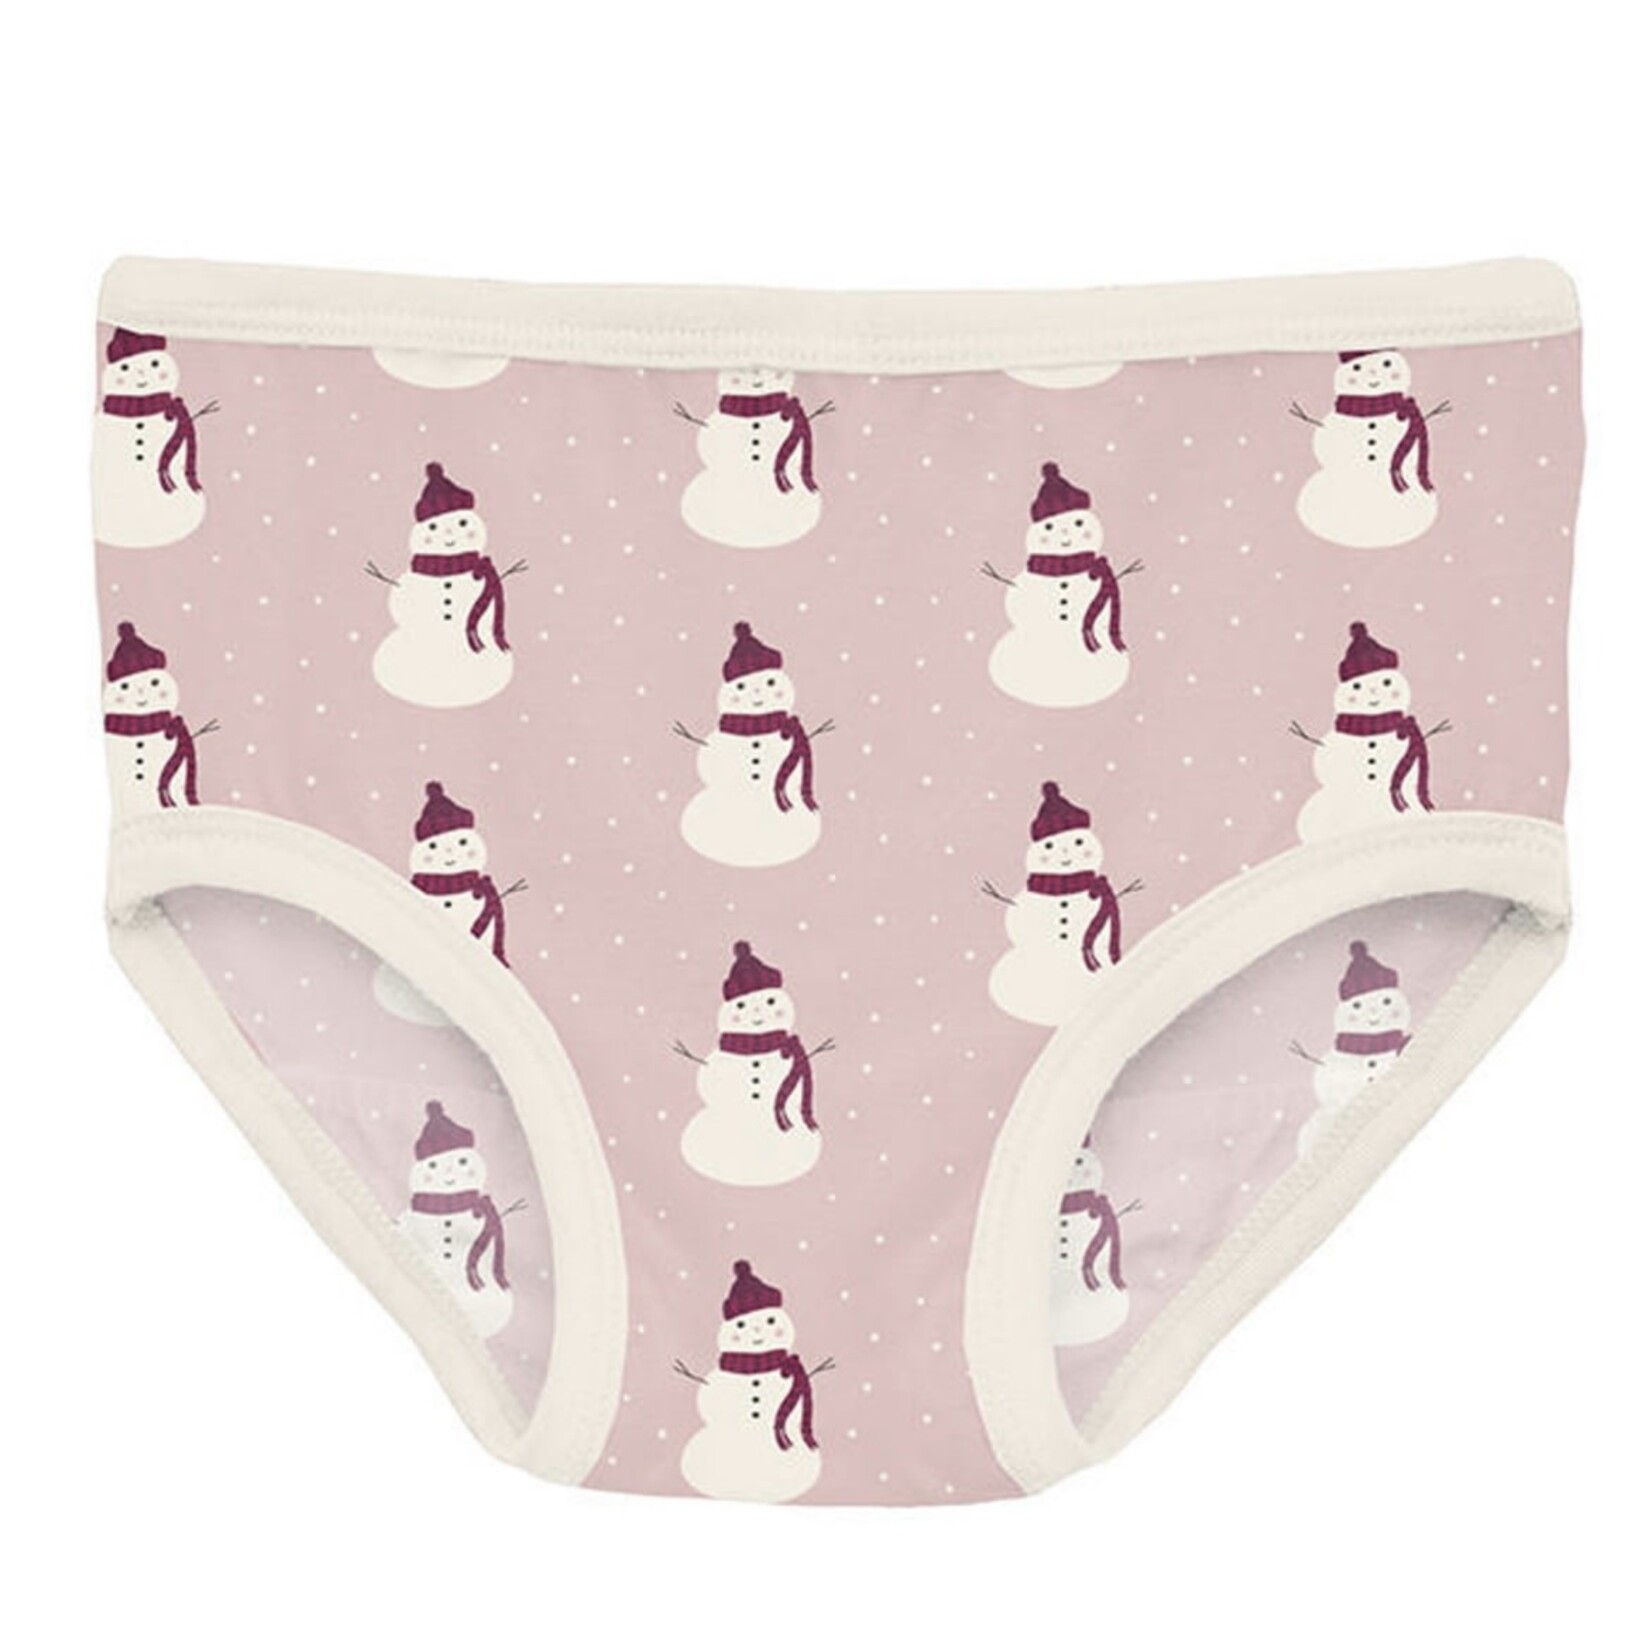 KicKee Pants KicKee Pants - Print Girls Underwear